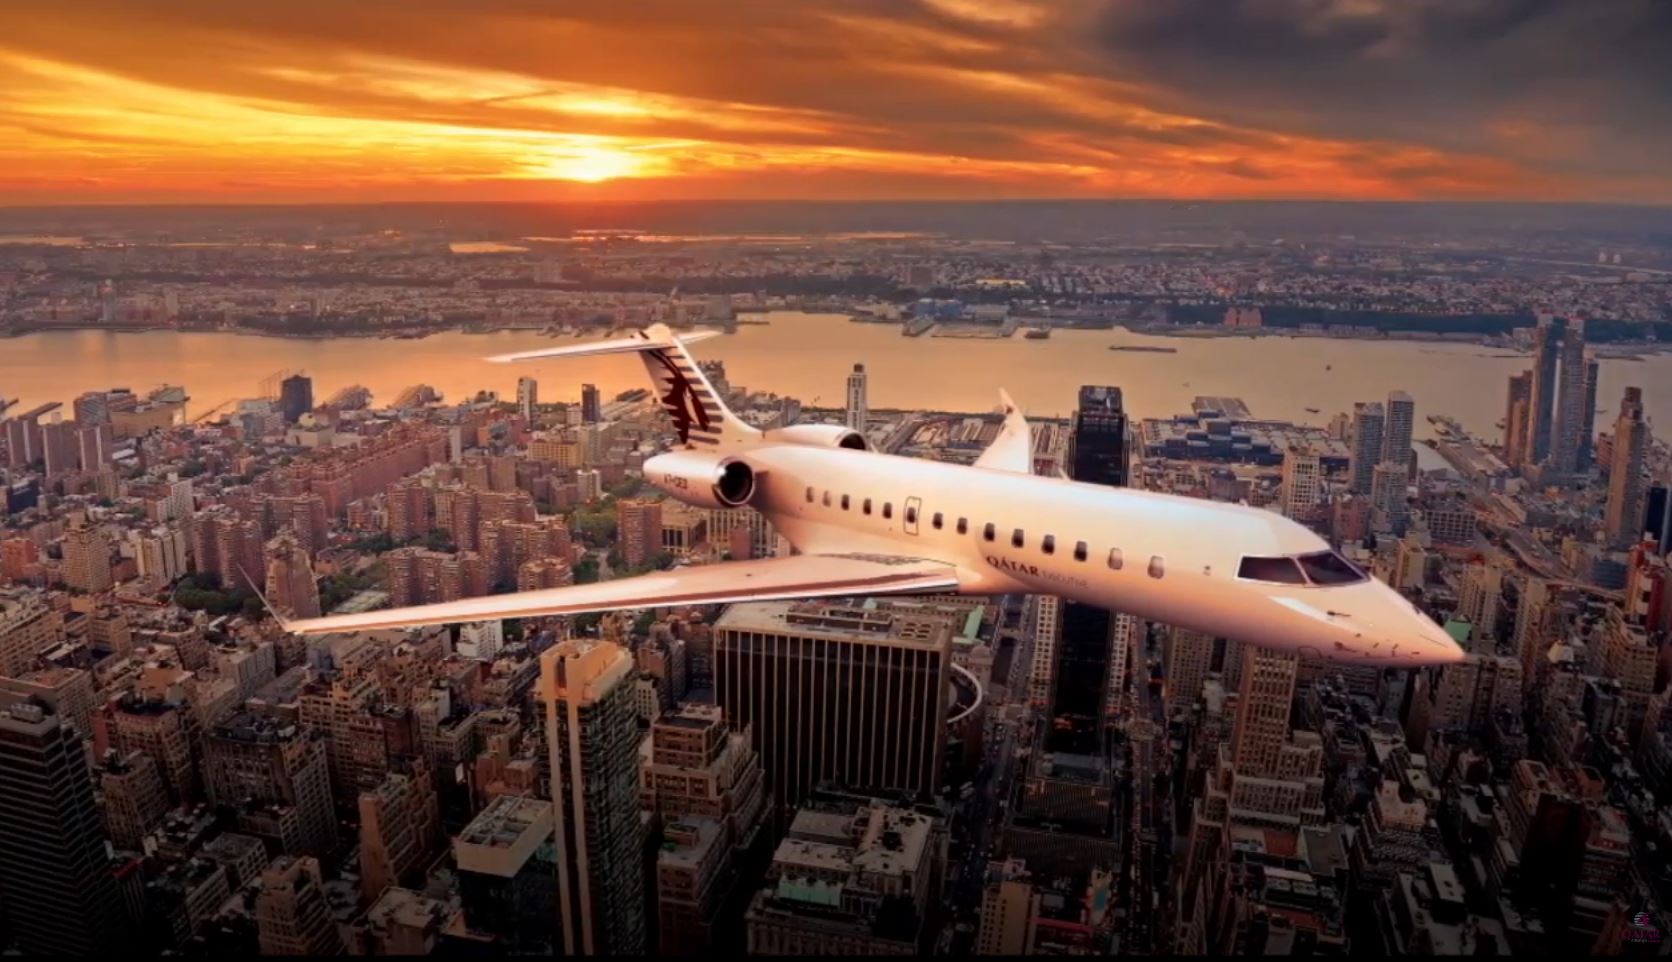 Qatar Airways – Introducing the Qatar Executive fleet